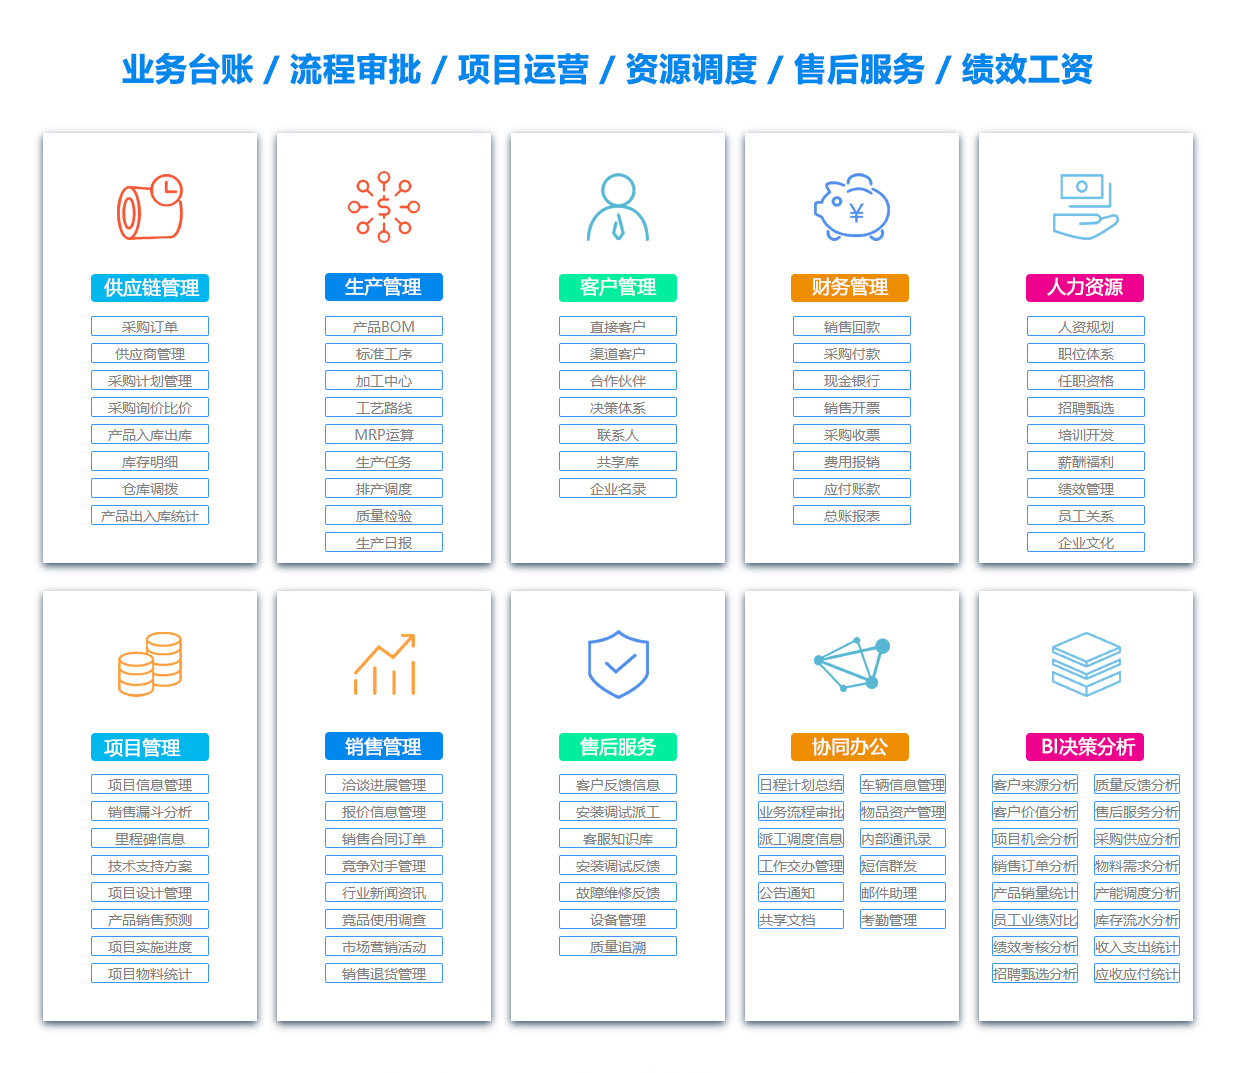 芜湖MIS:信息管理系统